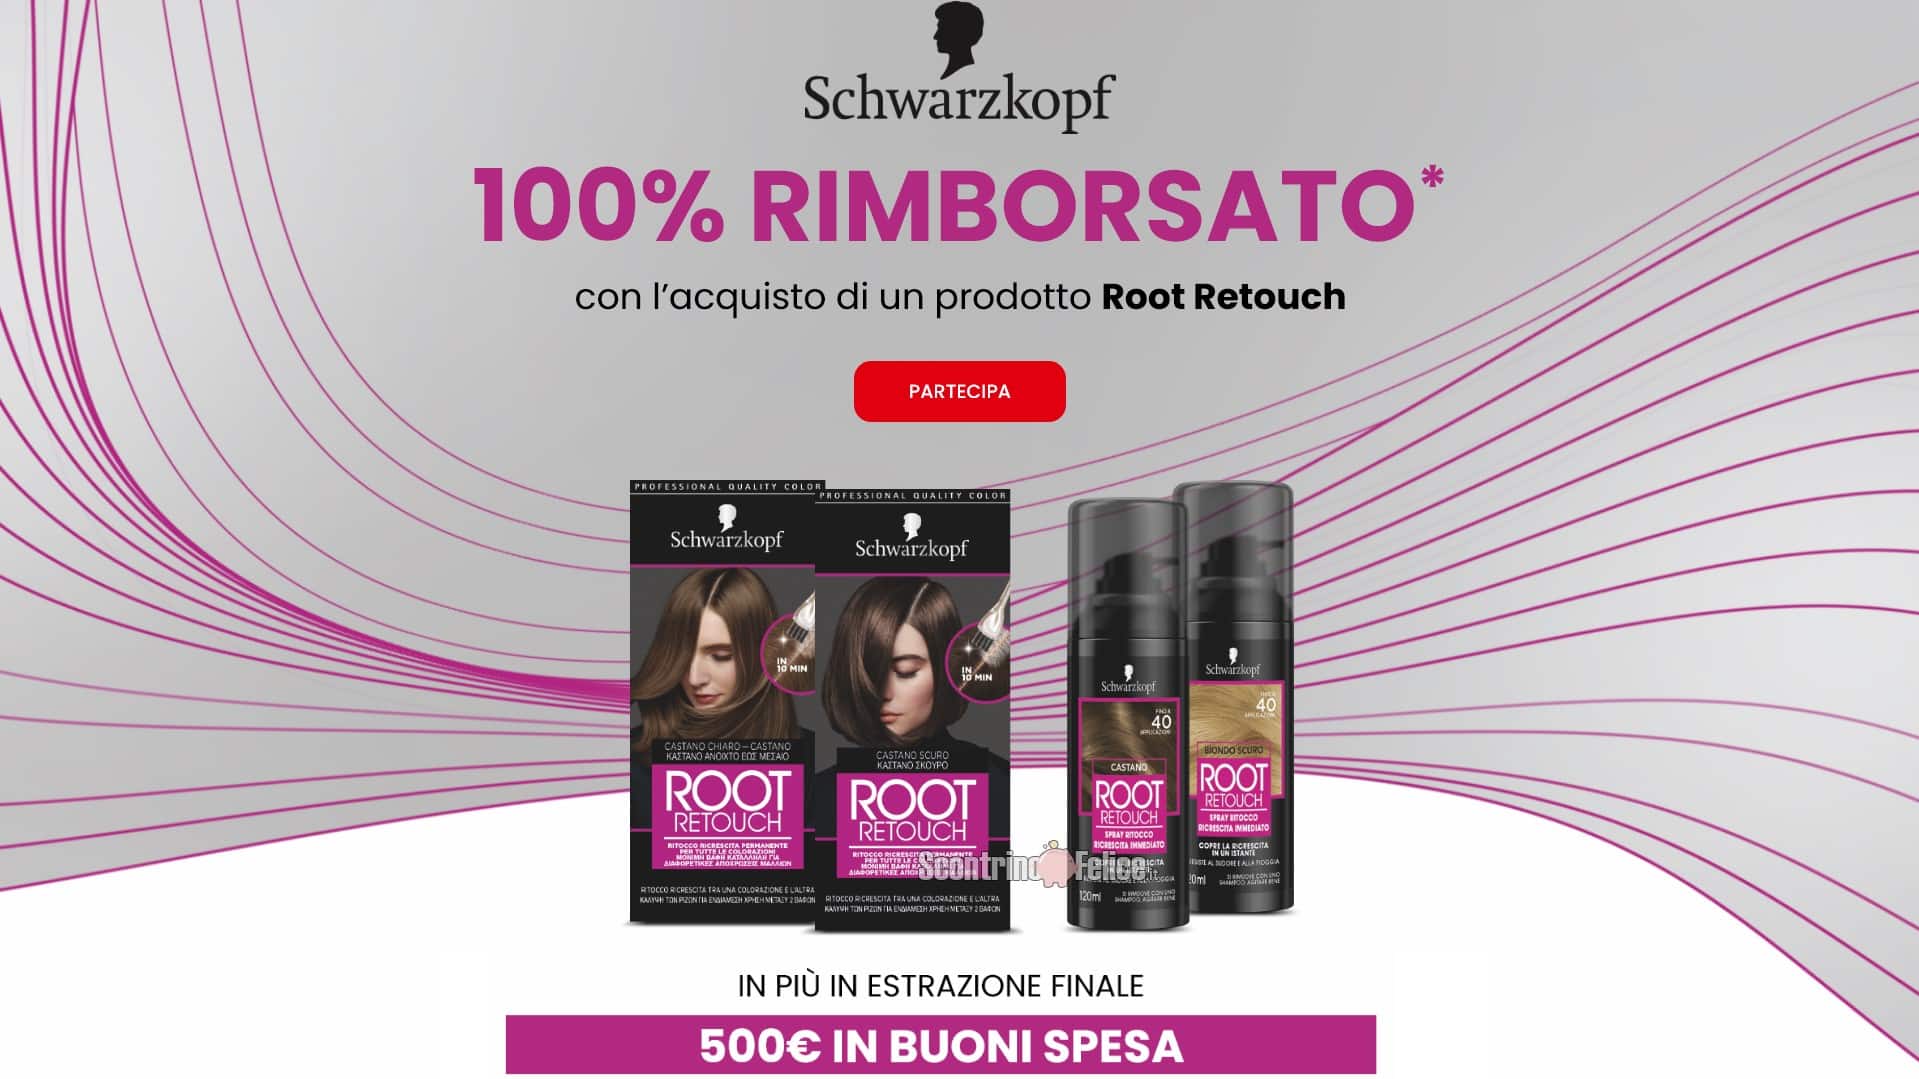 Schwarzkopf 100% rimborsato: ricevi il rimborso di Root Retouch e vinci 500 euro in buoni spesa